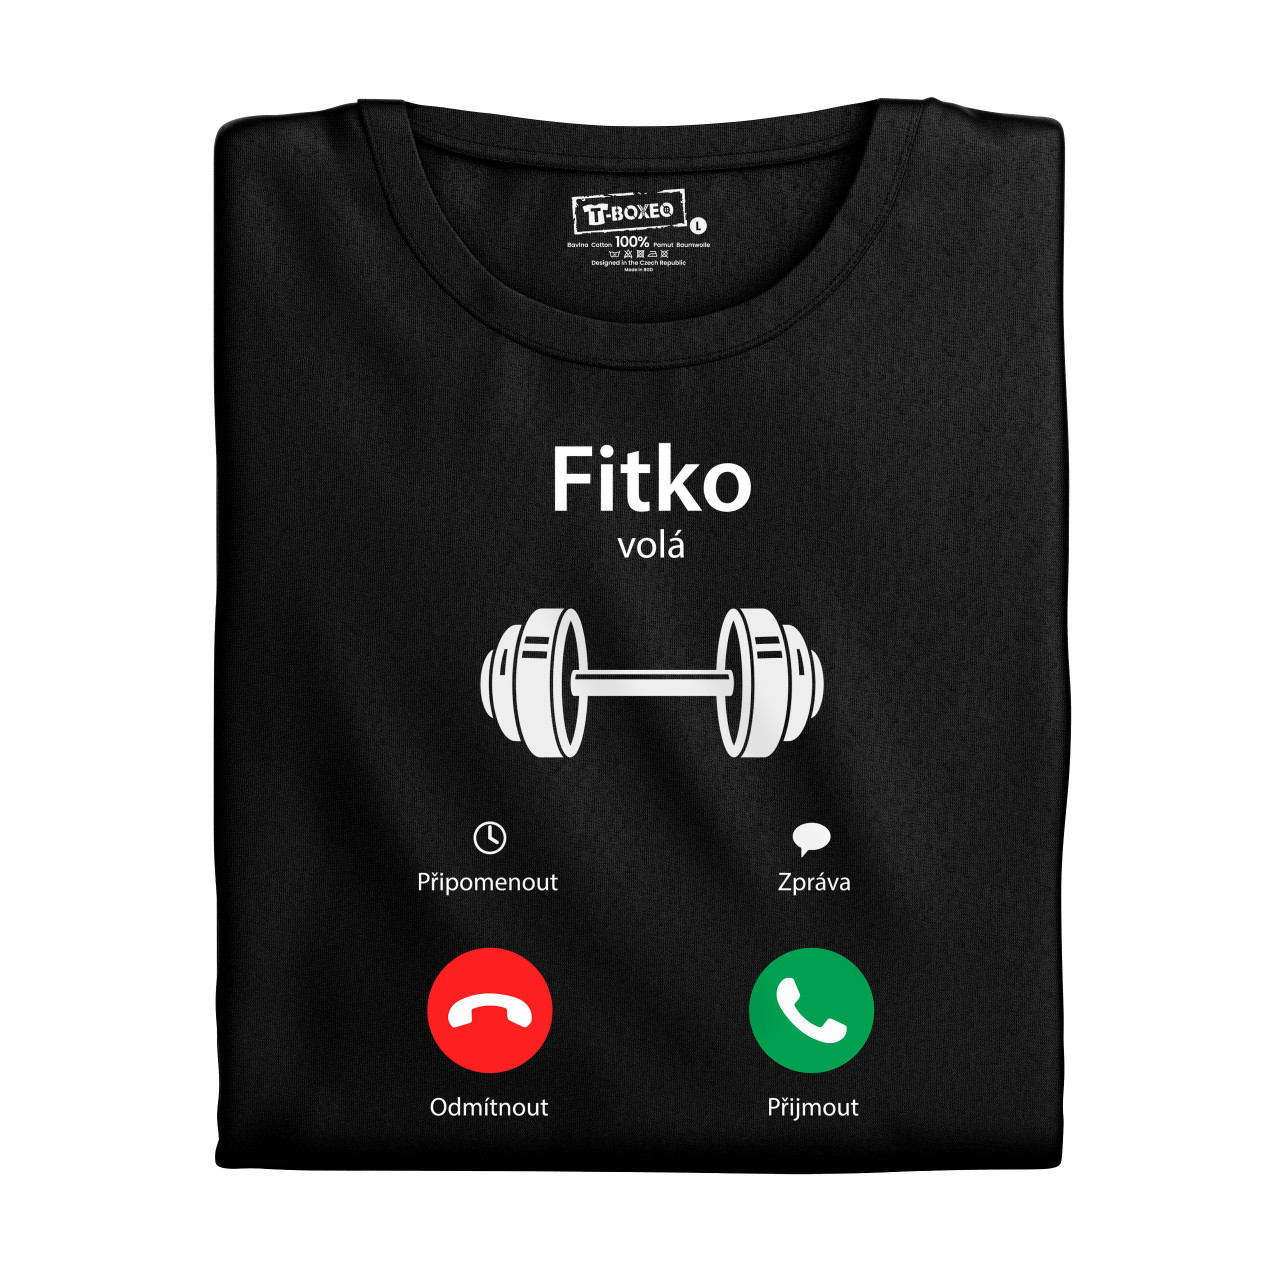 Pánské tričko s potiskem “Fitness volá”